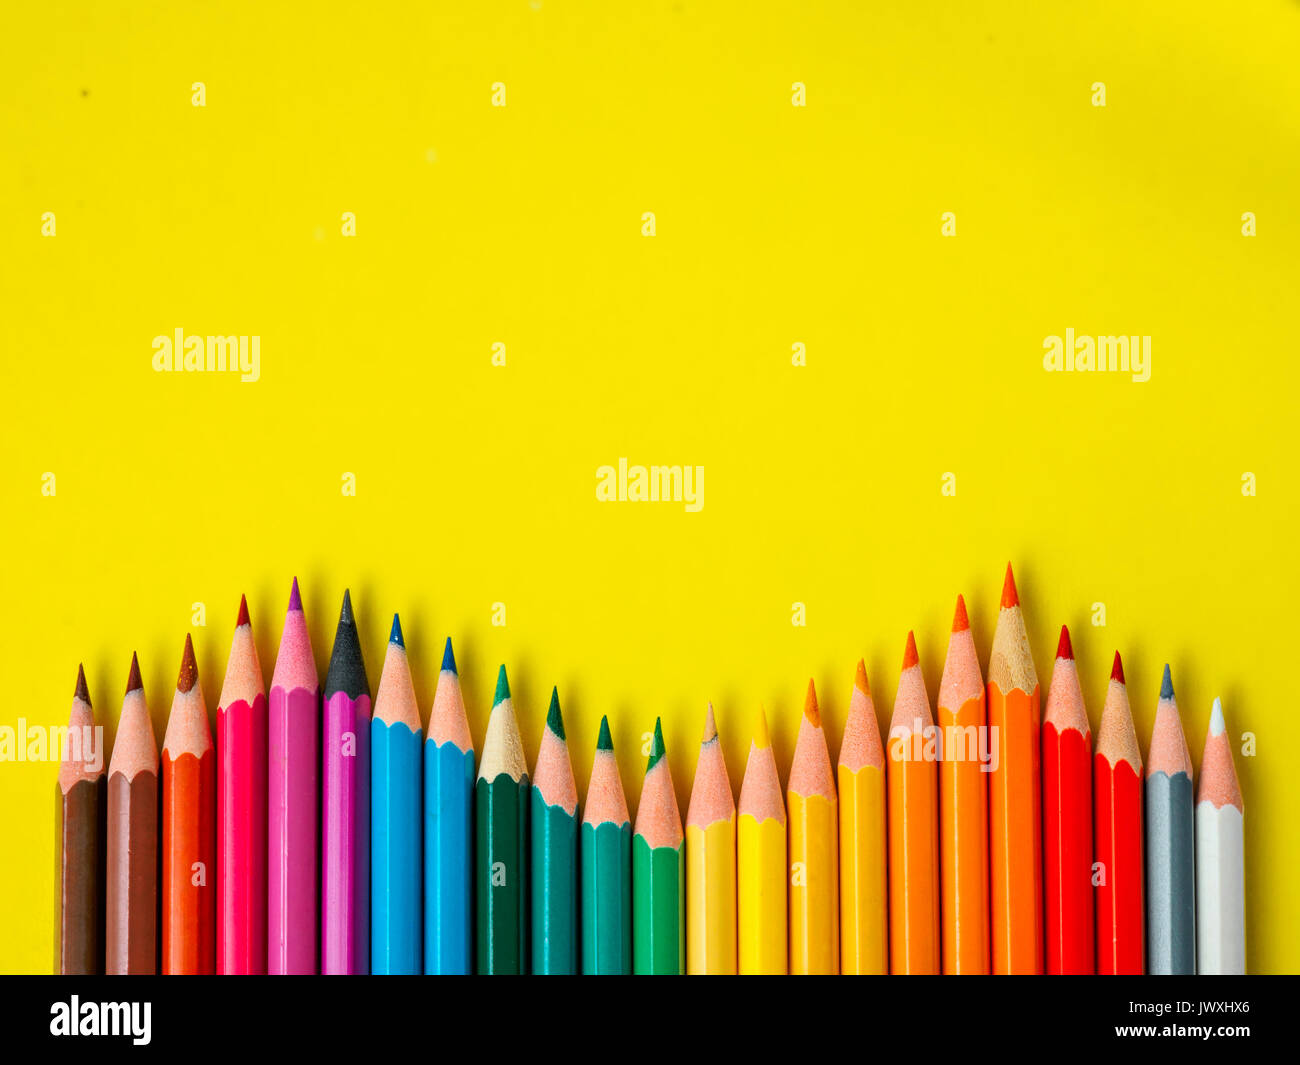 Matita arcobaleno immagini e fotografie stock ad alta risoluzione - Alamy